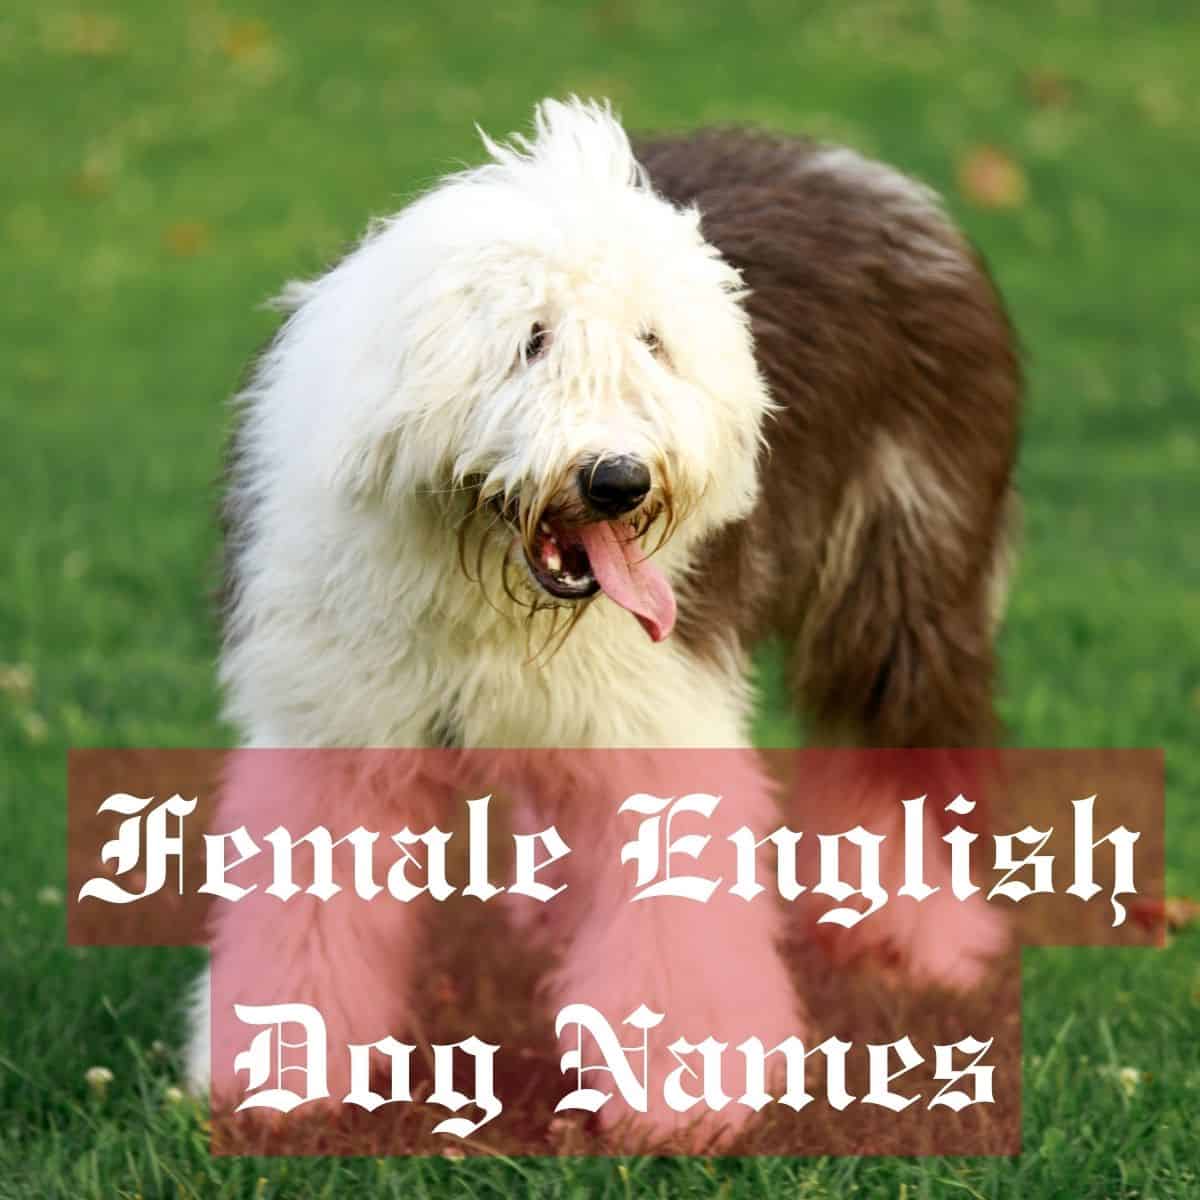 Female English Dog Names